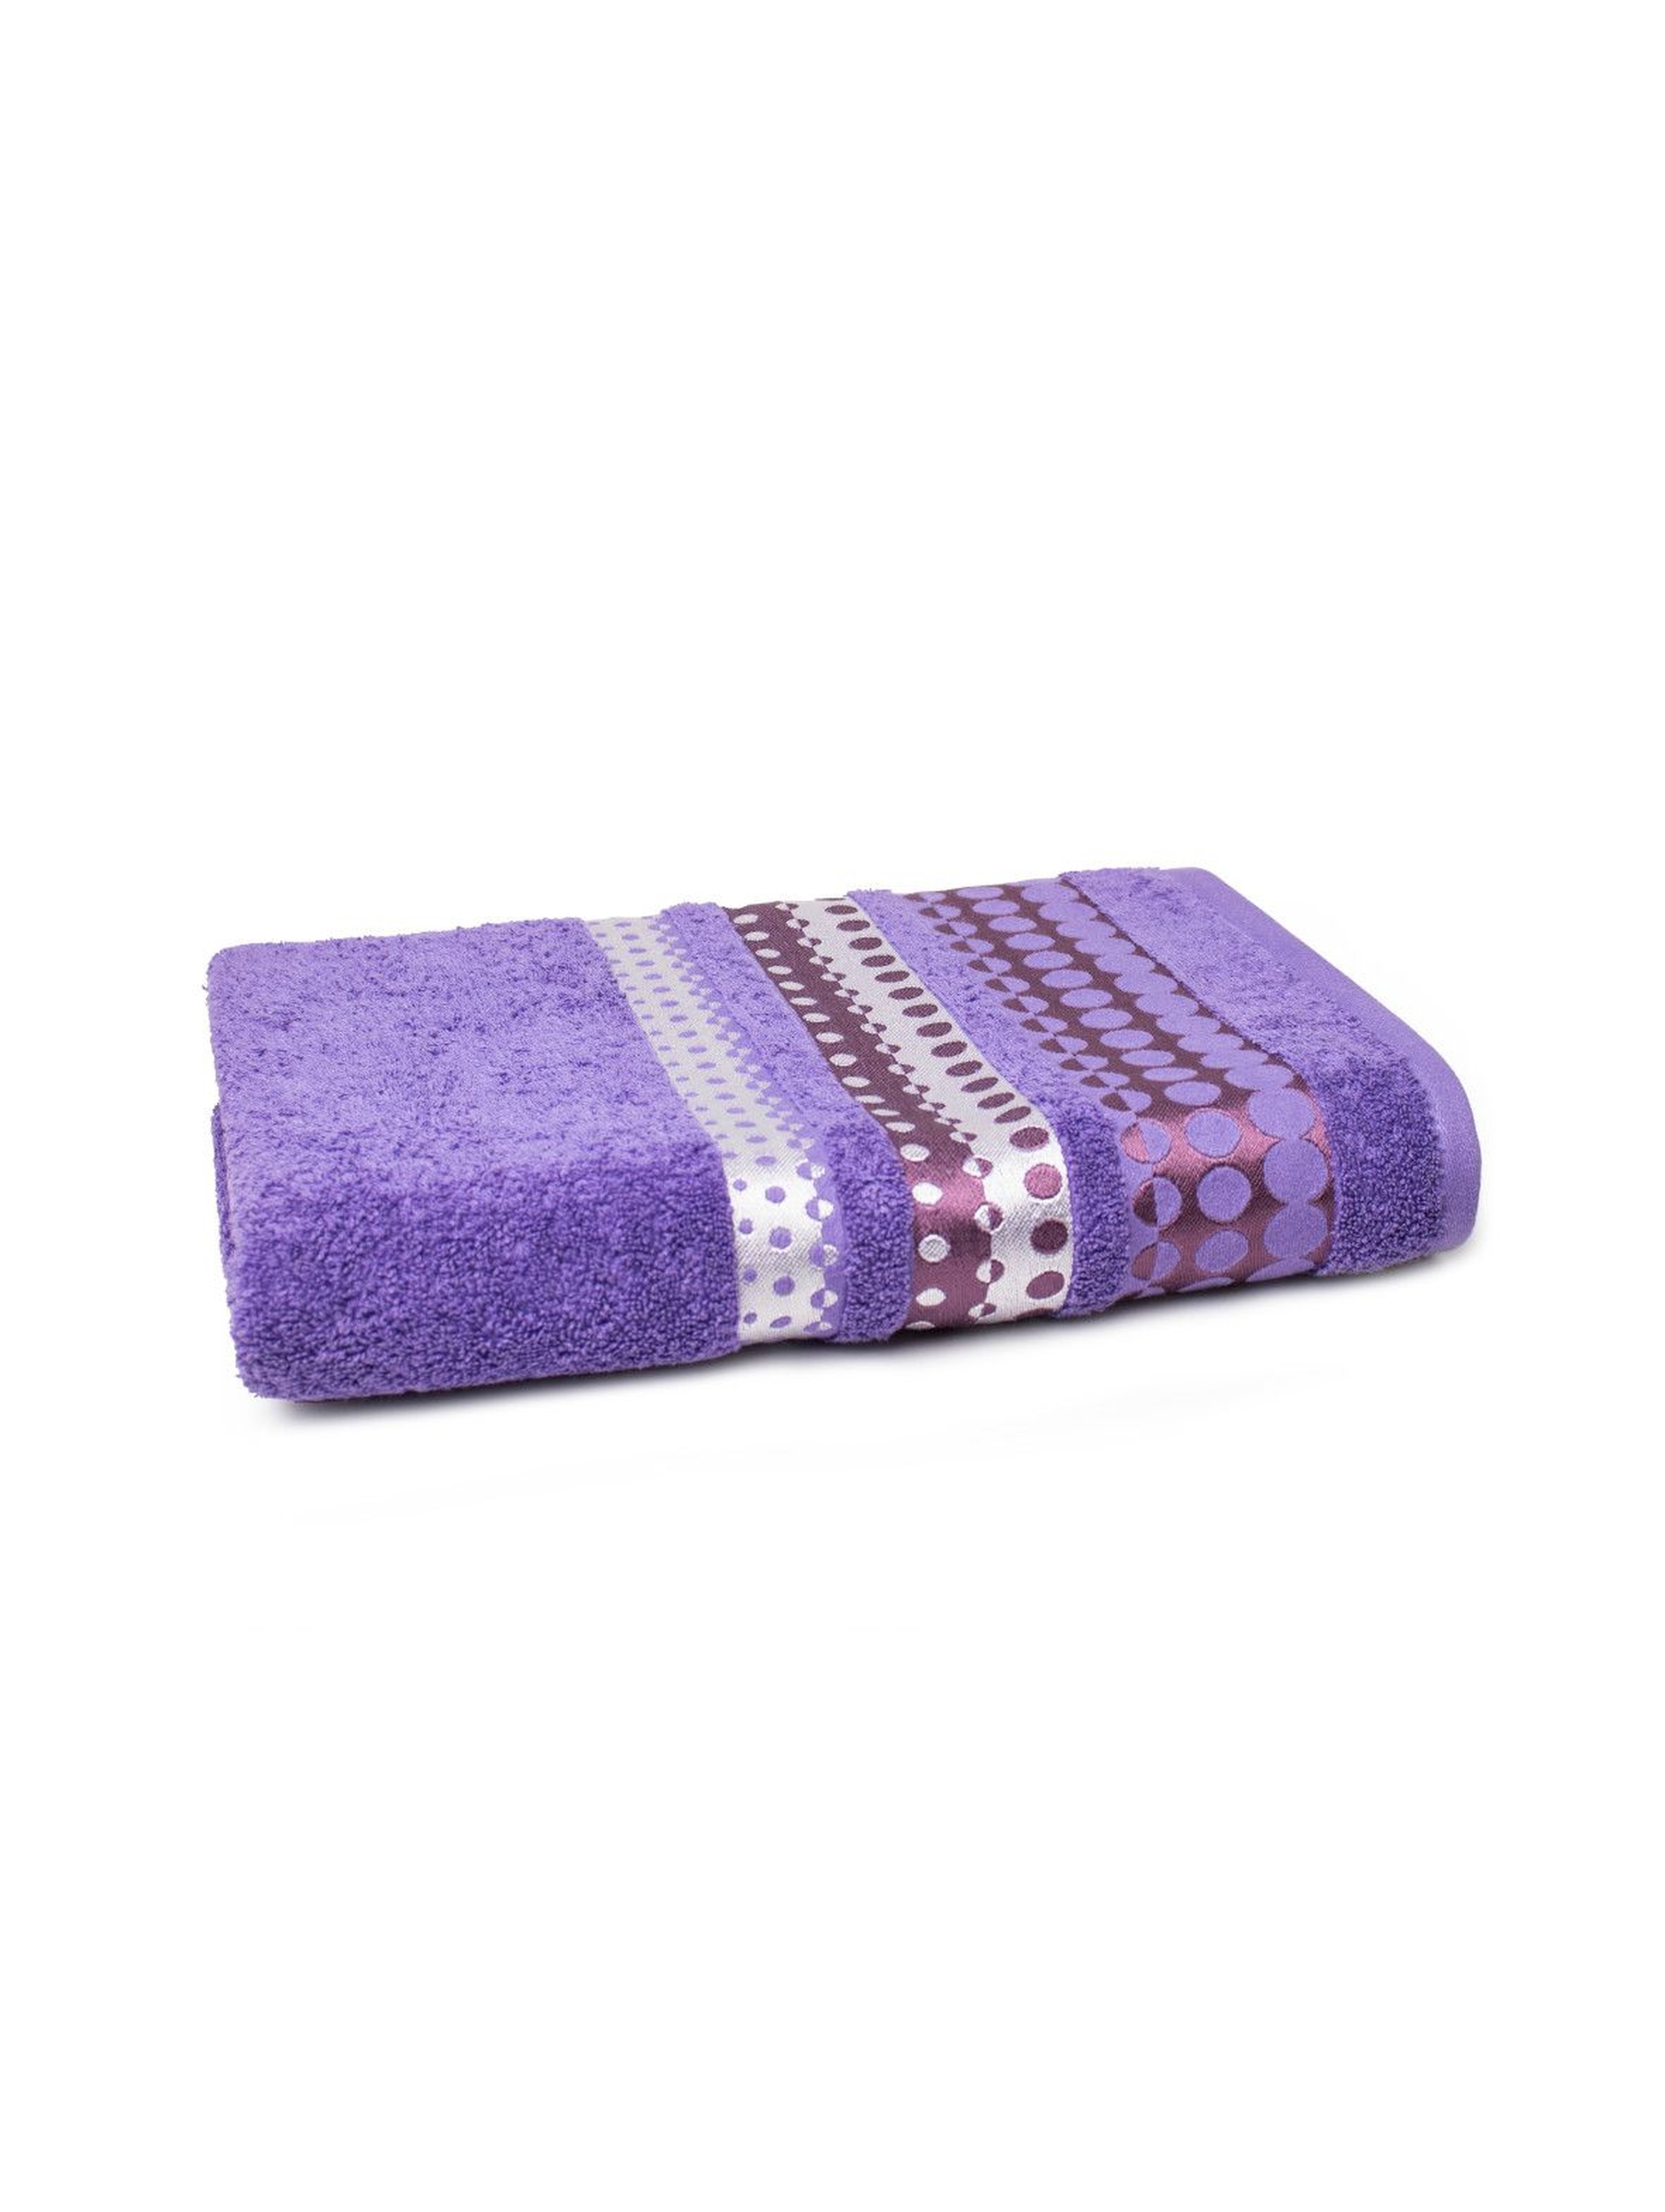 Bawełniany ręcznik w kolorze fioletowym 70x140 cm